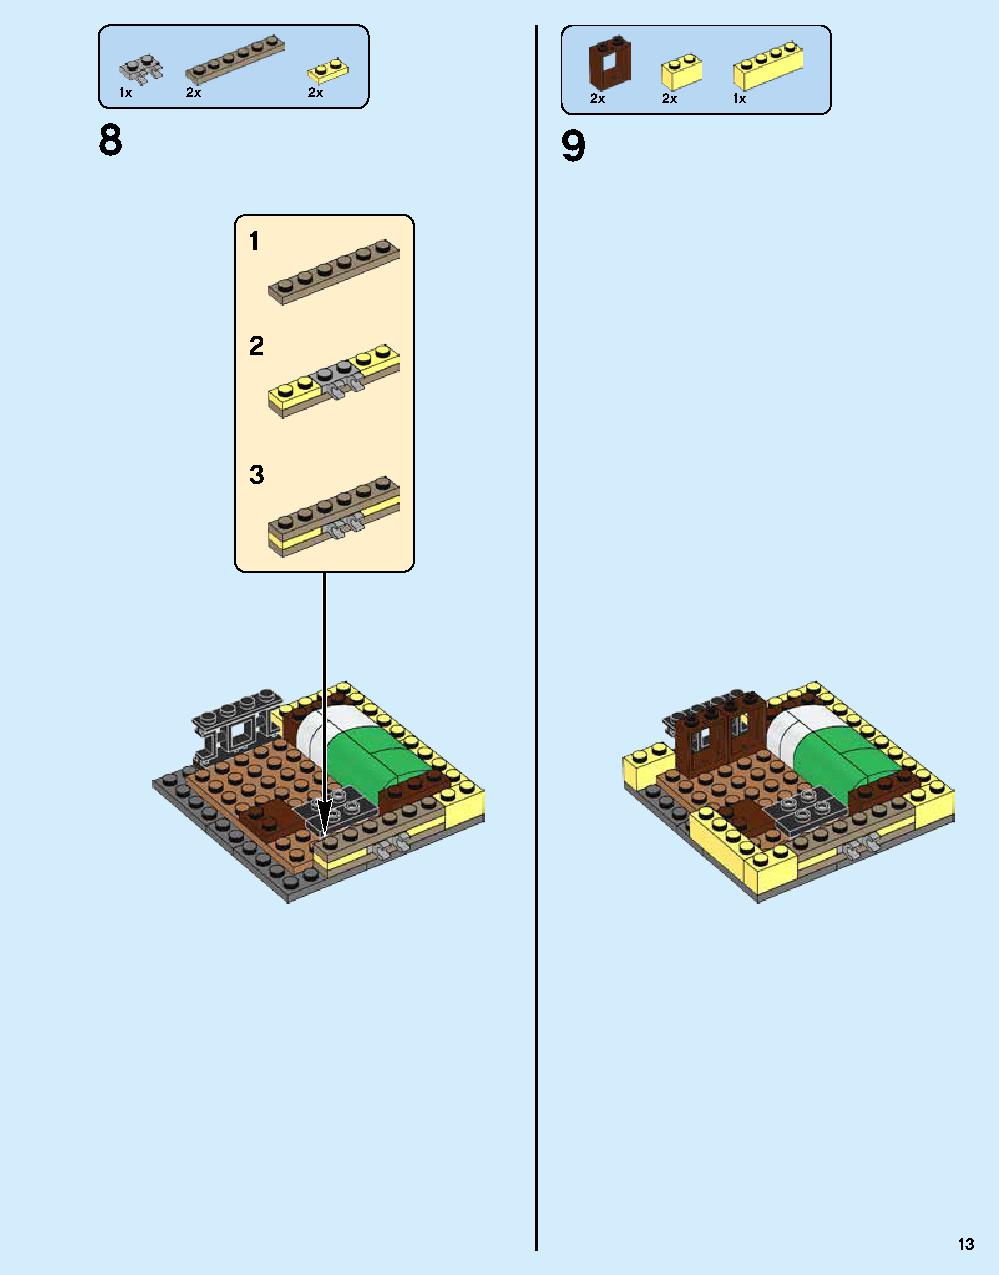 ニンジャゴー シティ 70620 レゴの商品情報 レゴの説明書・組立方法 13 page